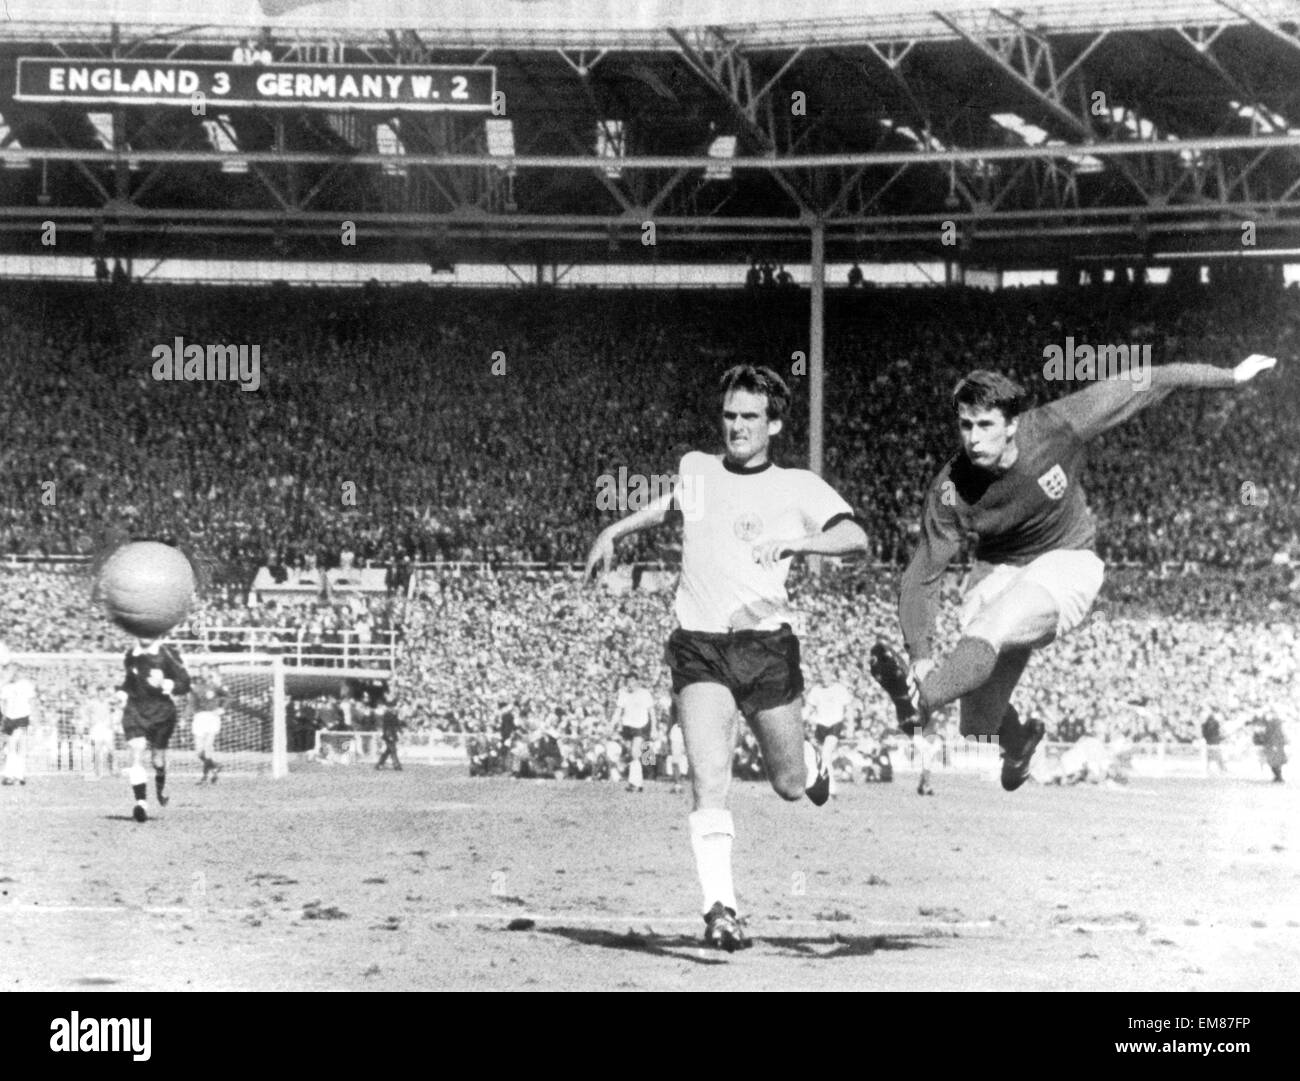 Welt-Cup-Finale im Wembley-Stadion. England 4 V Westdeutschland 2 nach Verlängerung. Geoff Hurst feuert im vierten Tor Englands in den sterbenden Sekunden mehr Zeit um ihre historischen Sieg zu sichern. 30. Juli 1966. Stockfoto